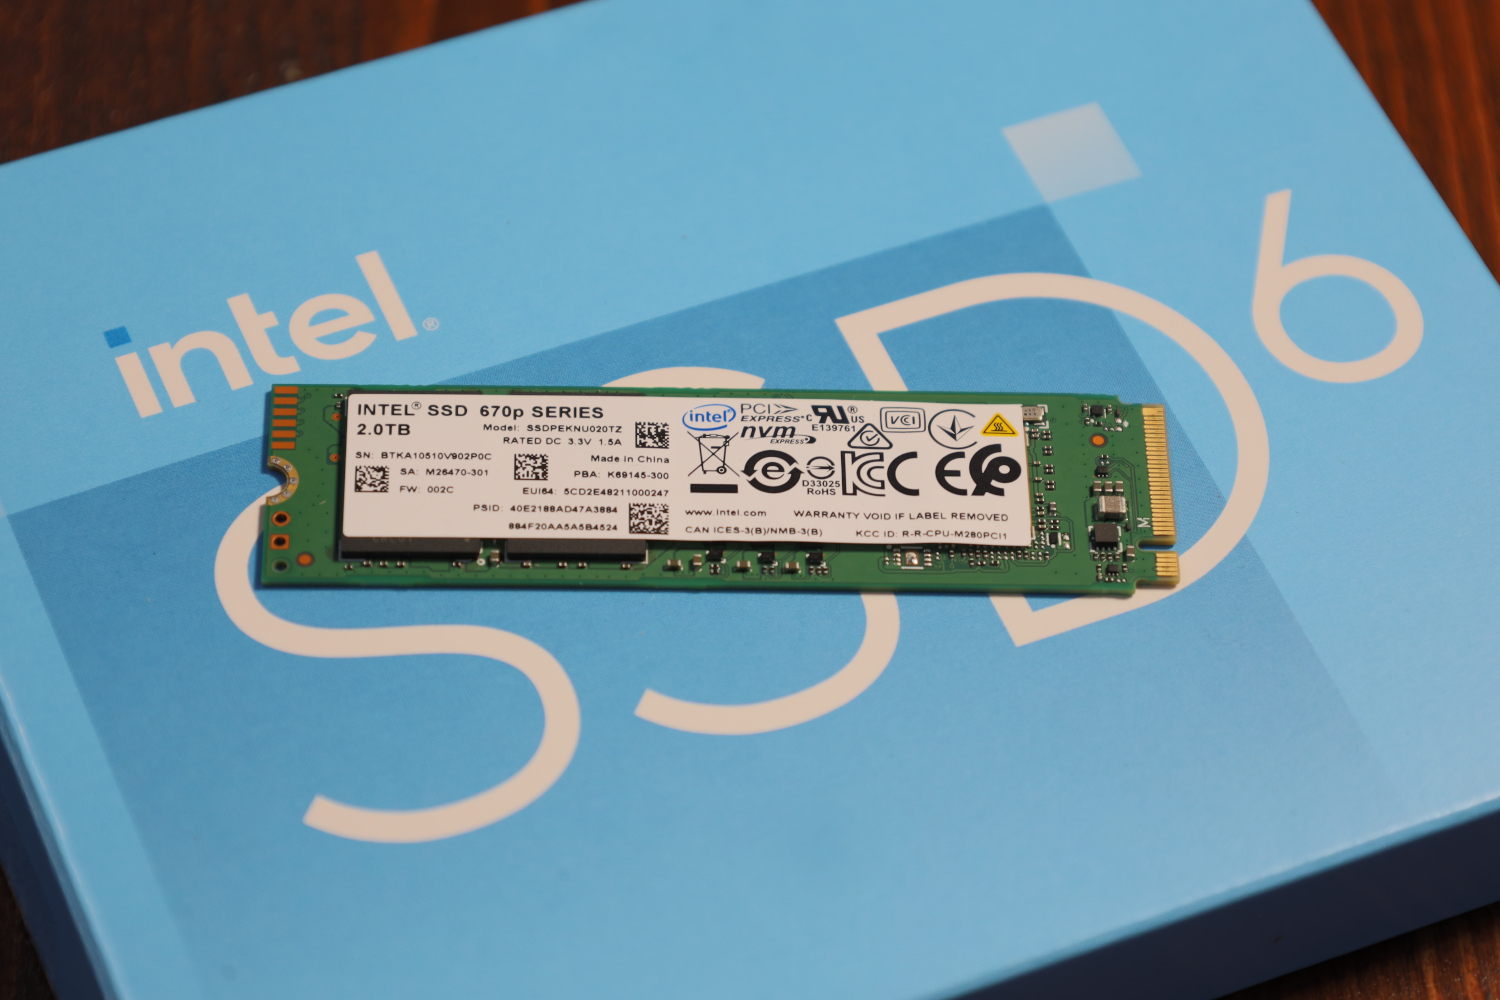 shave R blast Intel 670p 2TB M.2 NVMe SSD Review - ServeTheHome